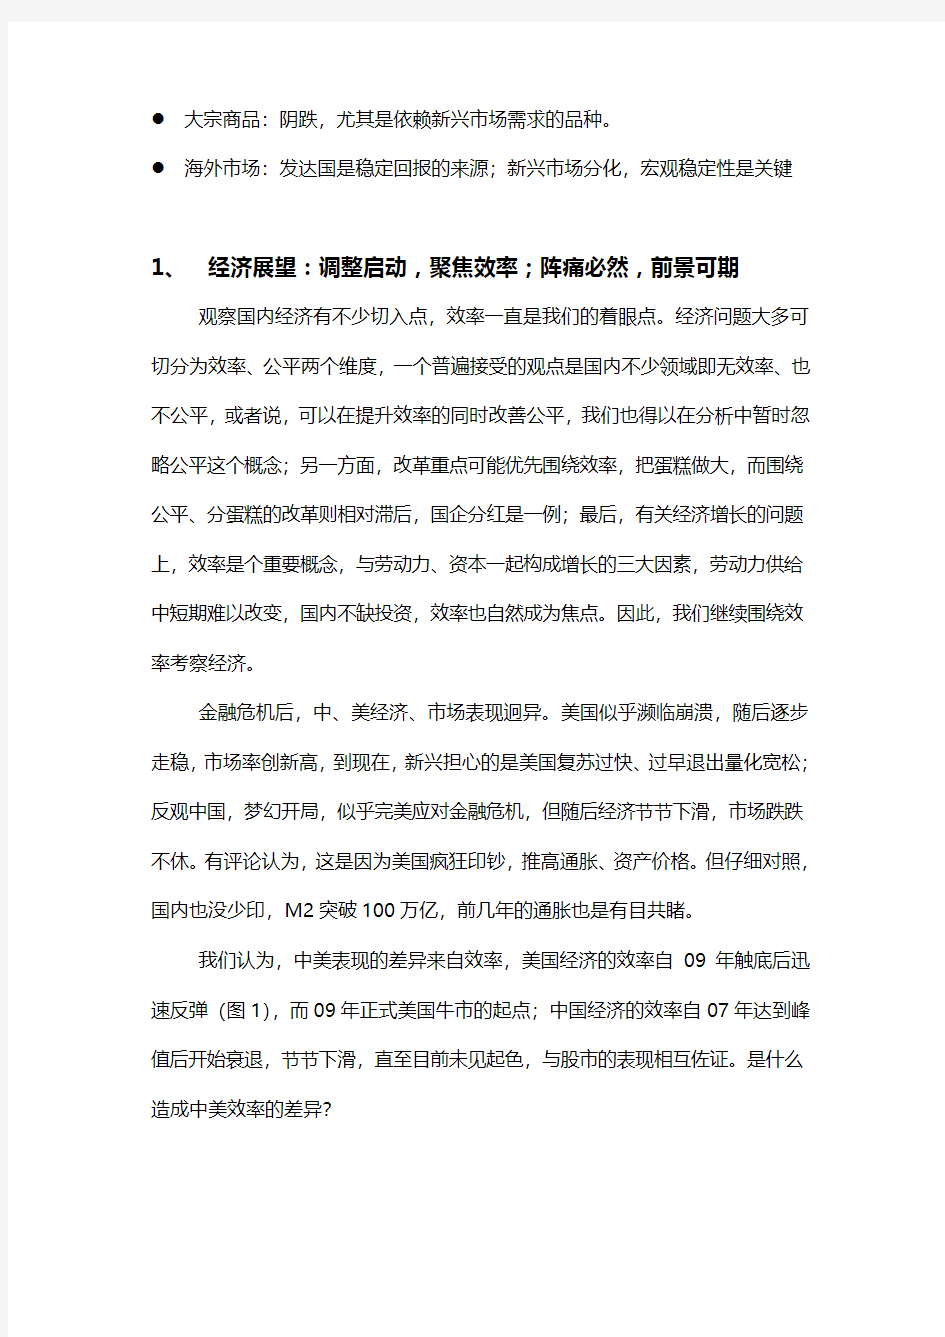 中国平保对2014市场展望—调整启动,聚焦效率;阵痛必然,前景可期 (1)